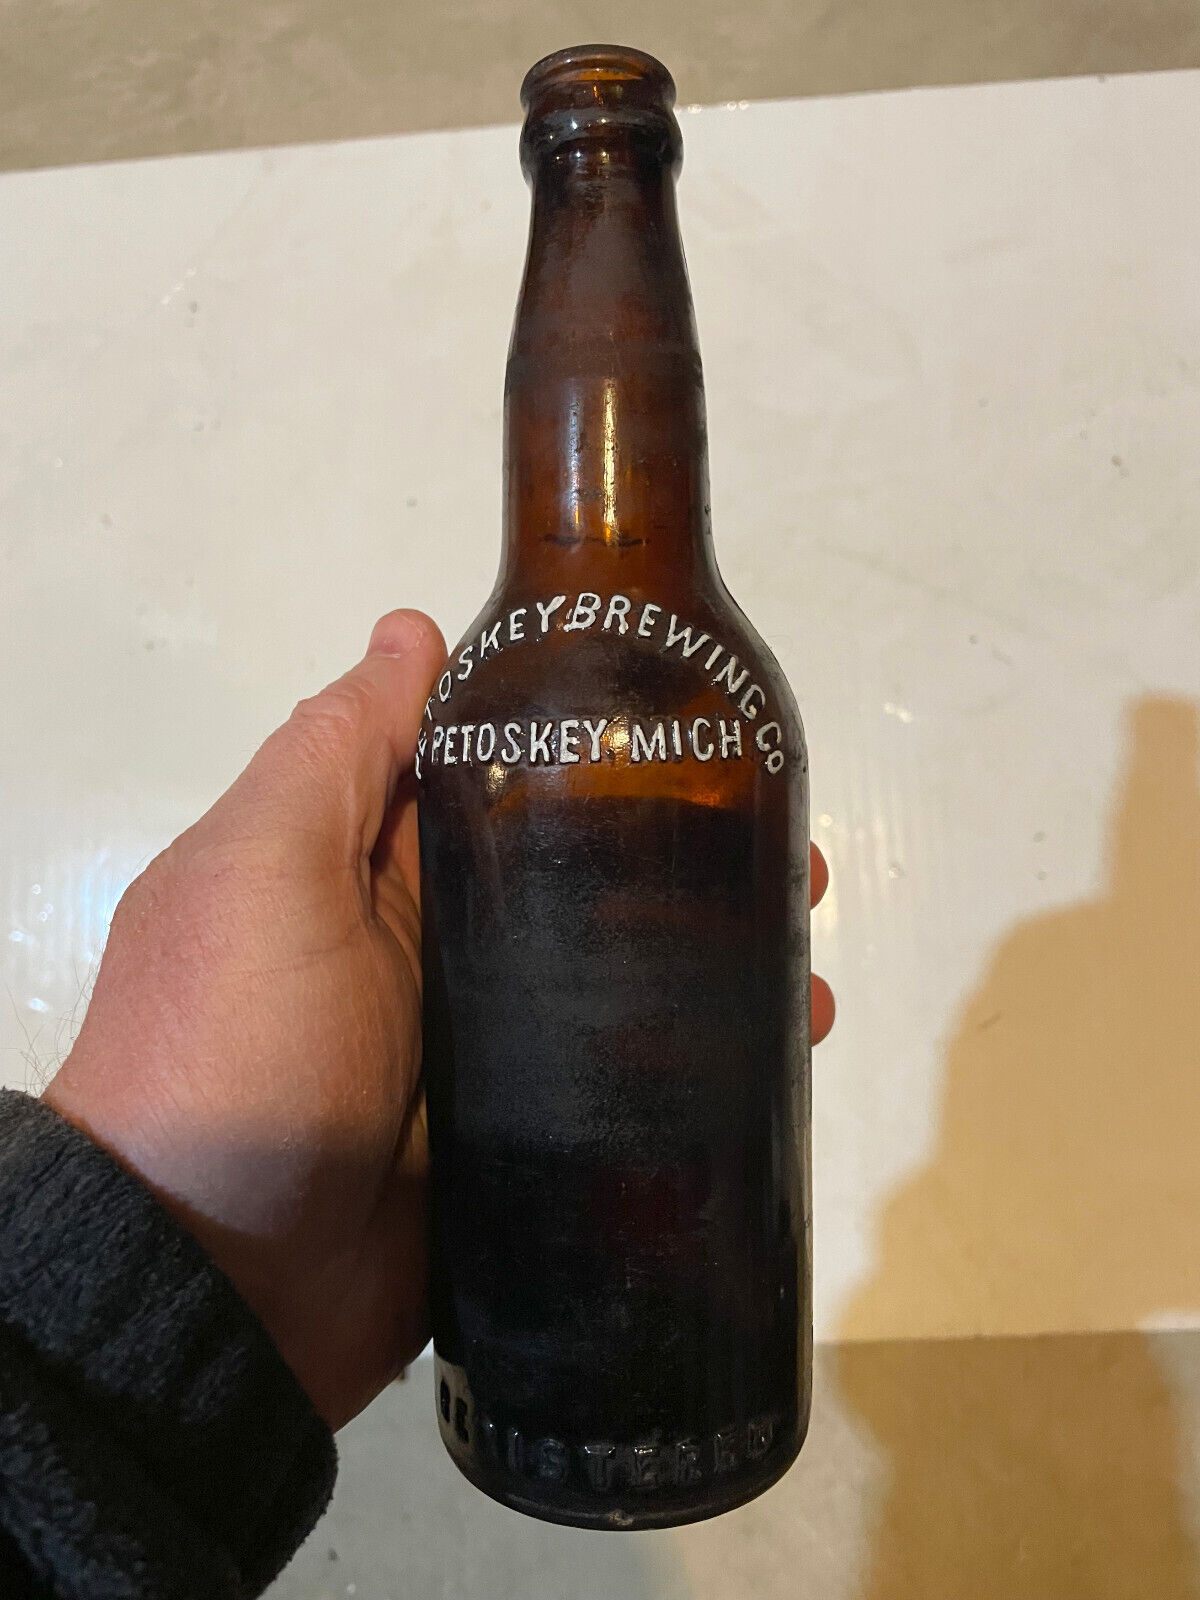 1890s 1900s Petoskey Brewing Company Michigan petoskey stone area bottle